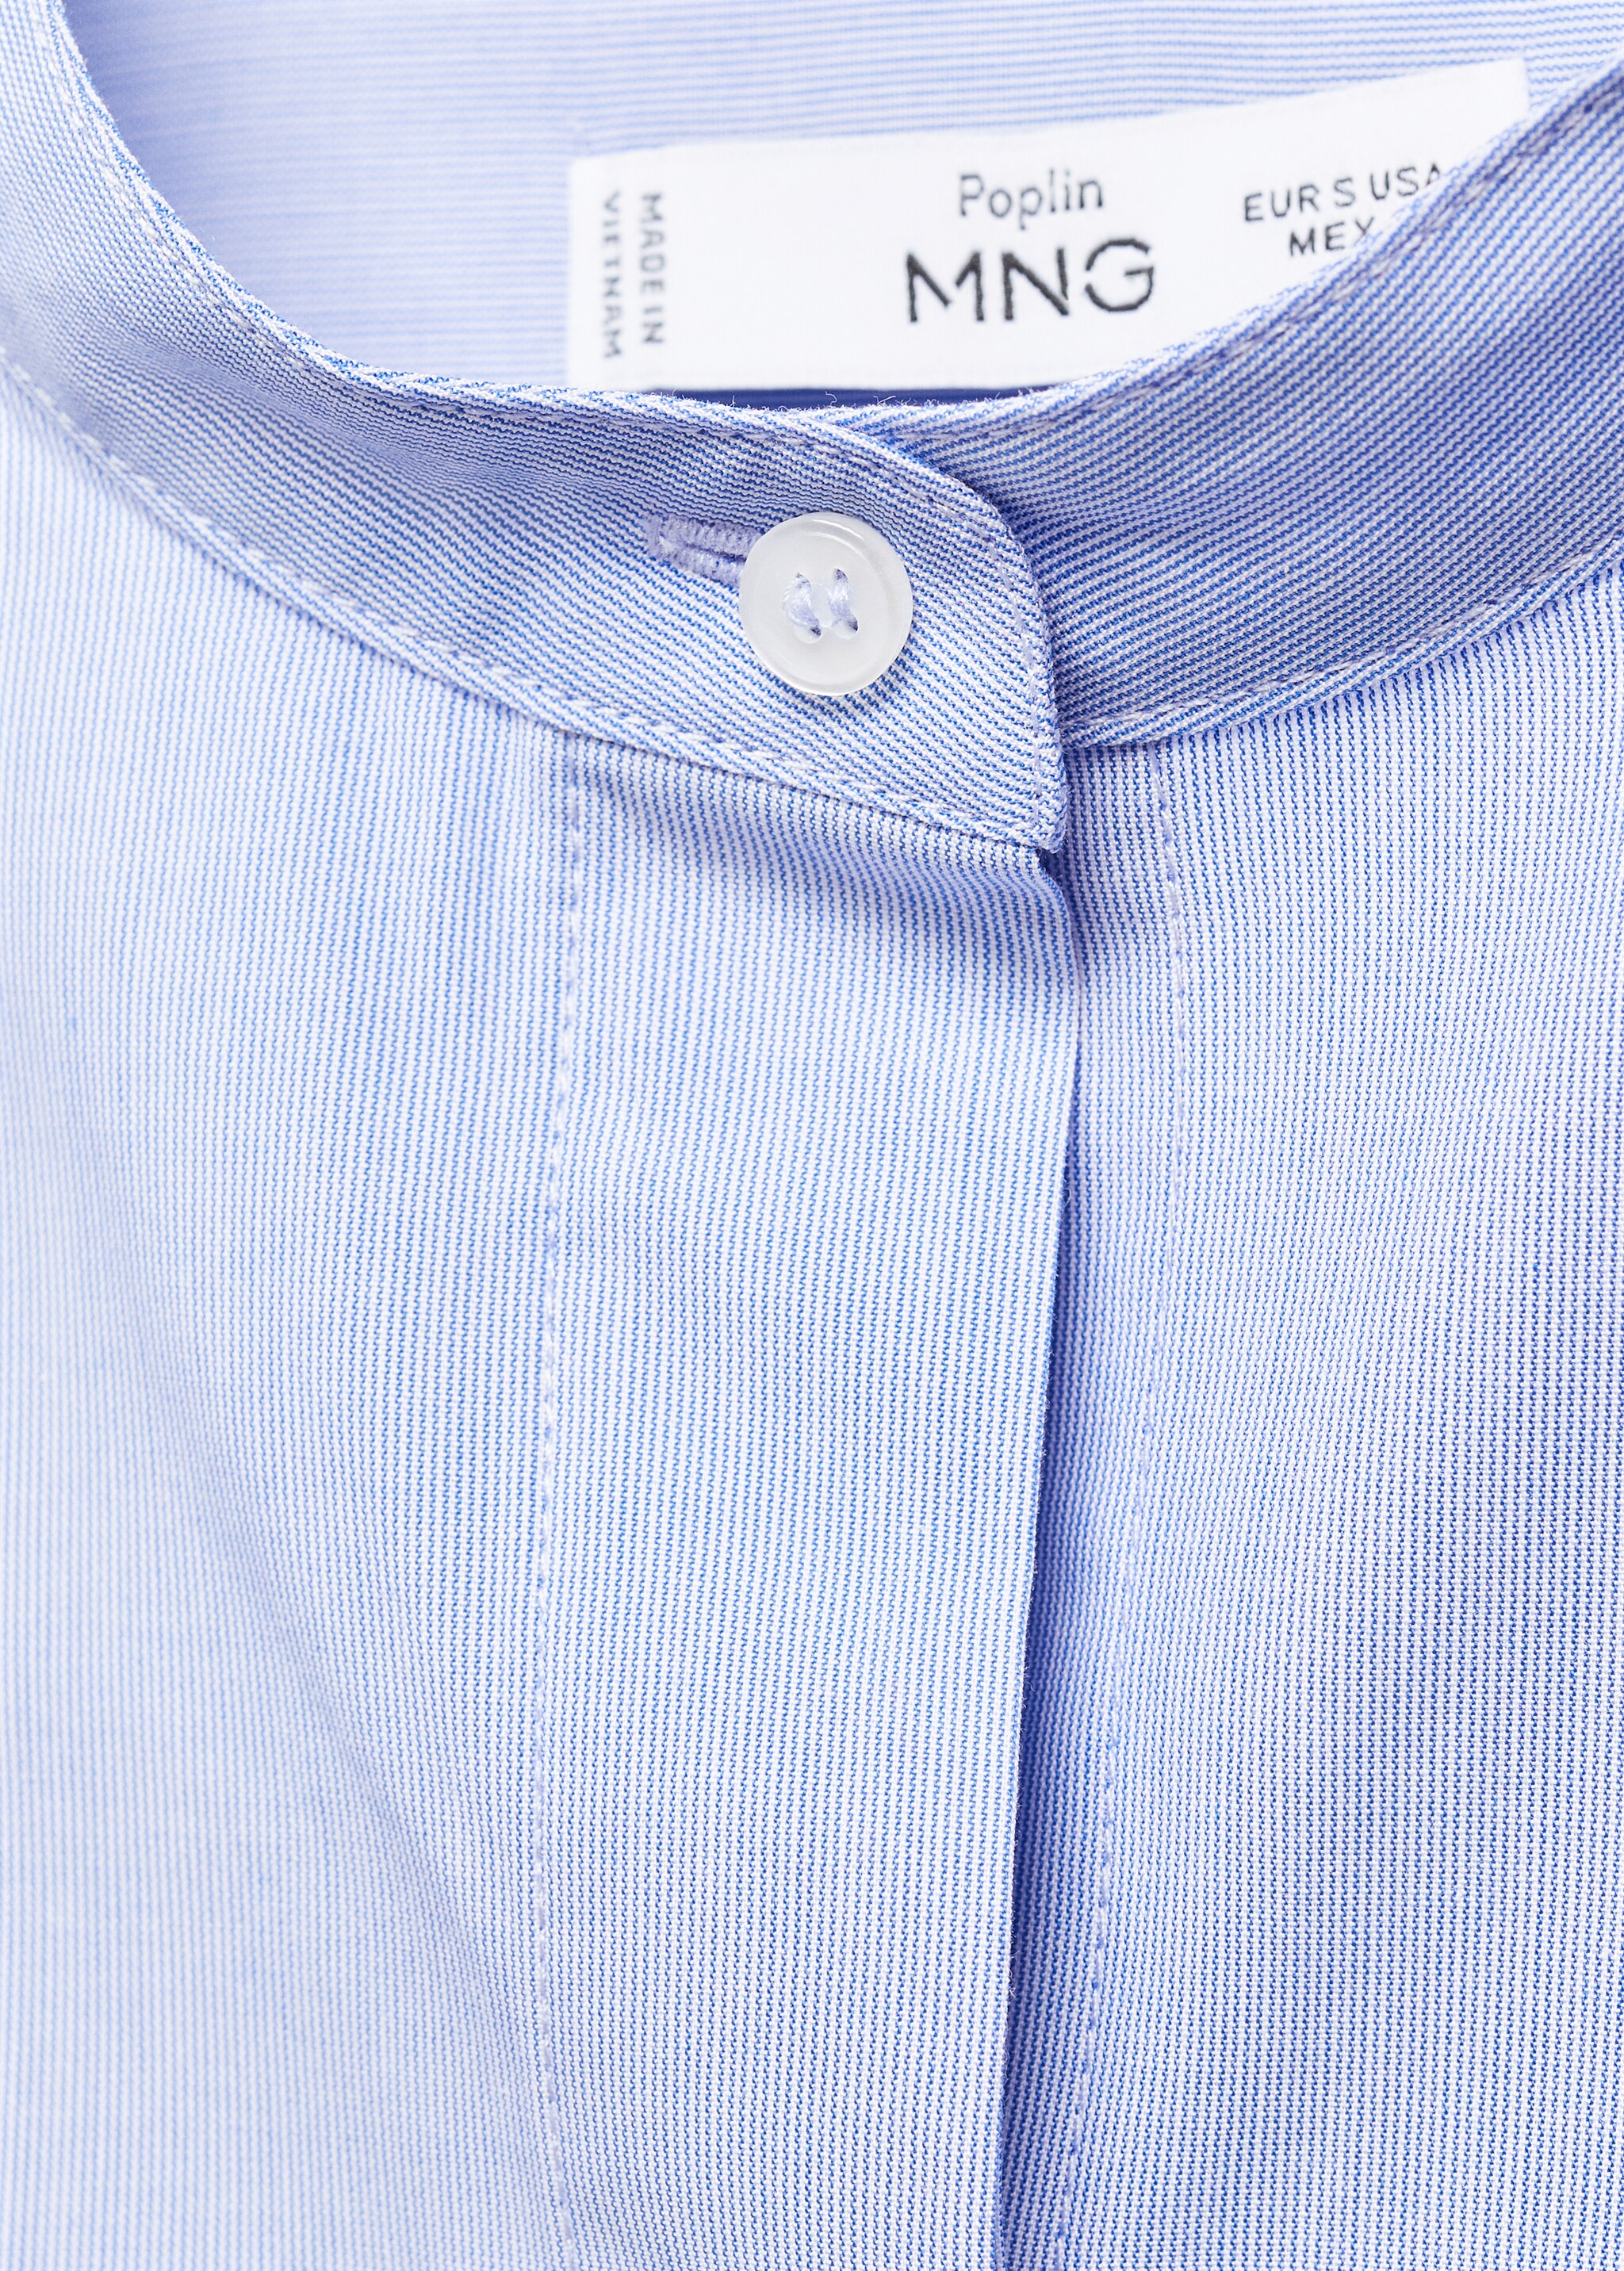 Camisa algodón botones - Detalle del artículo 8